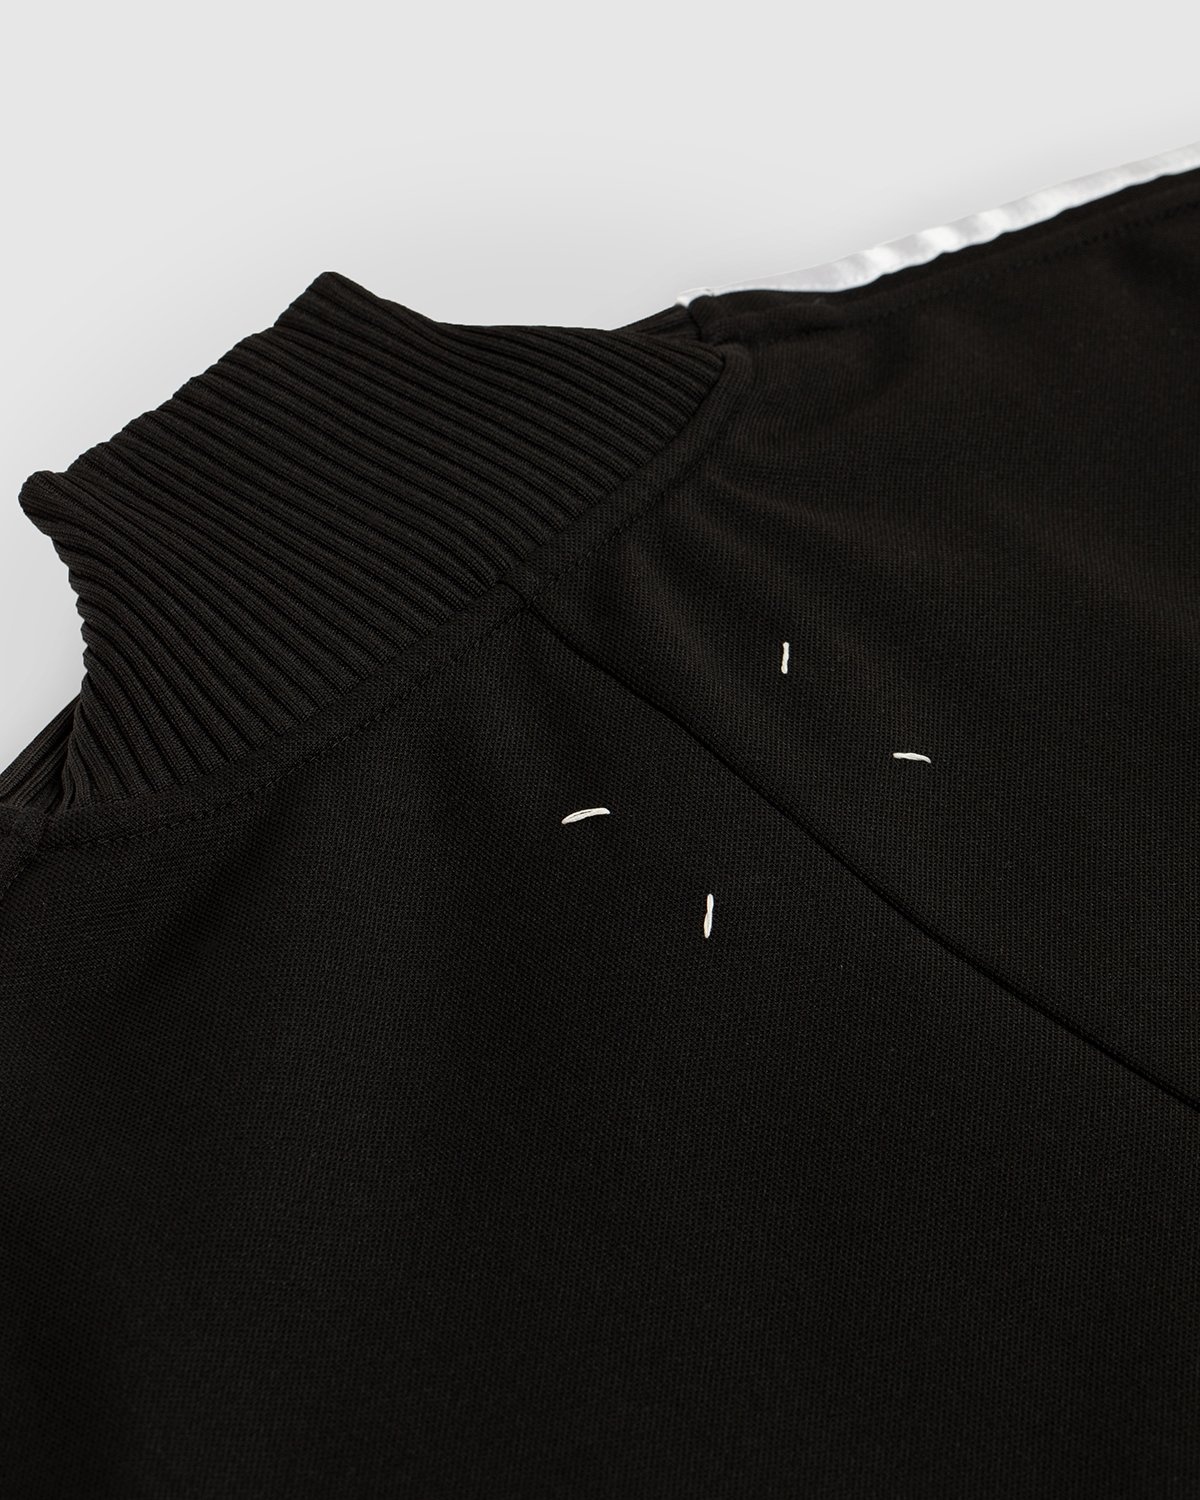 Maison Margiela – Track Jacket - Outerwear - Black - Image 3